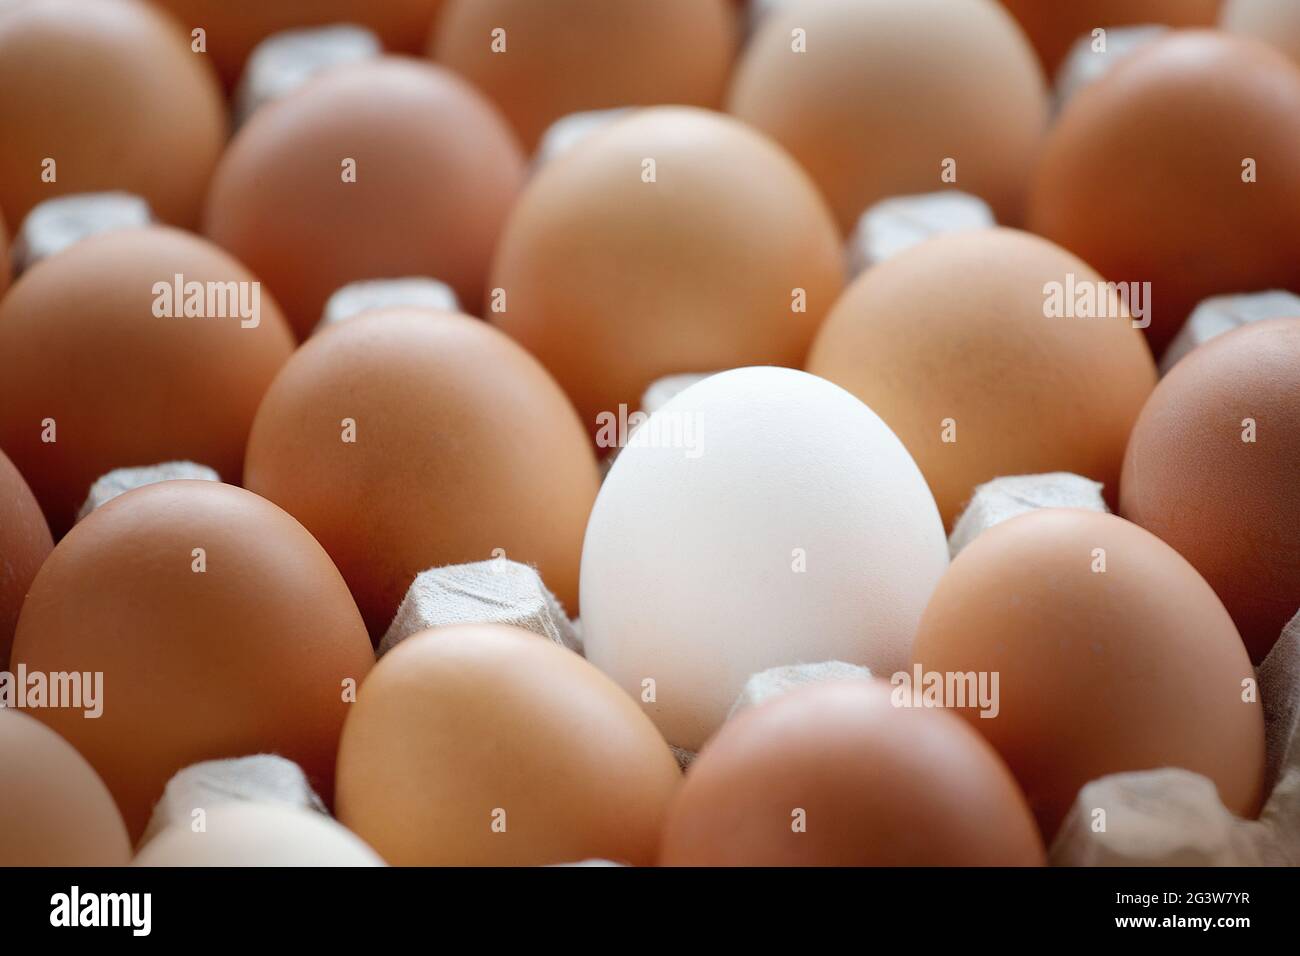 Un huevo de pollo blanco entre muchos huevos amarillos se encuentra en una caja de cartón. Foto de stock